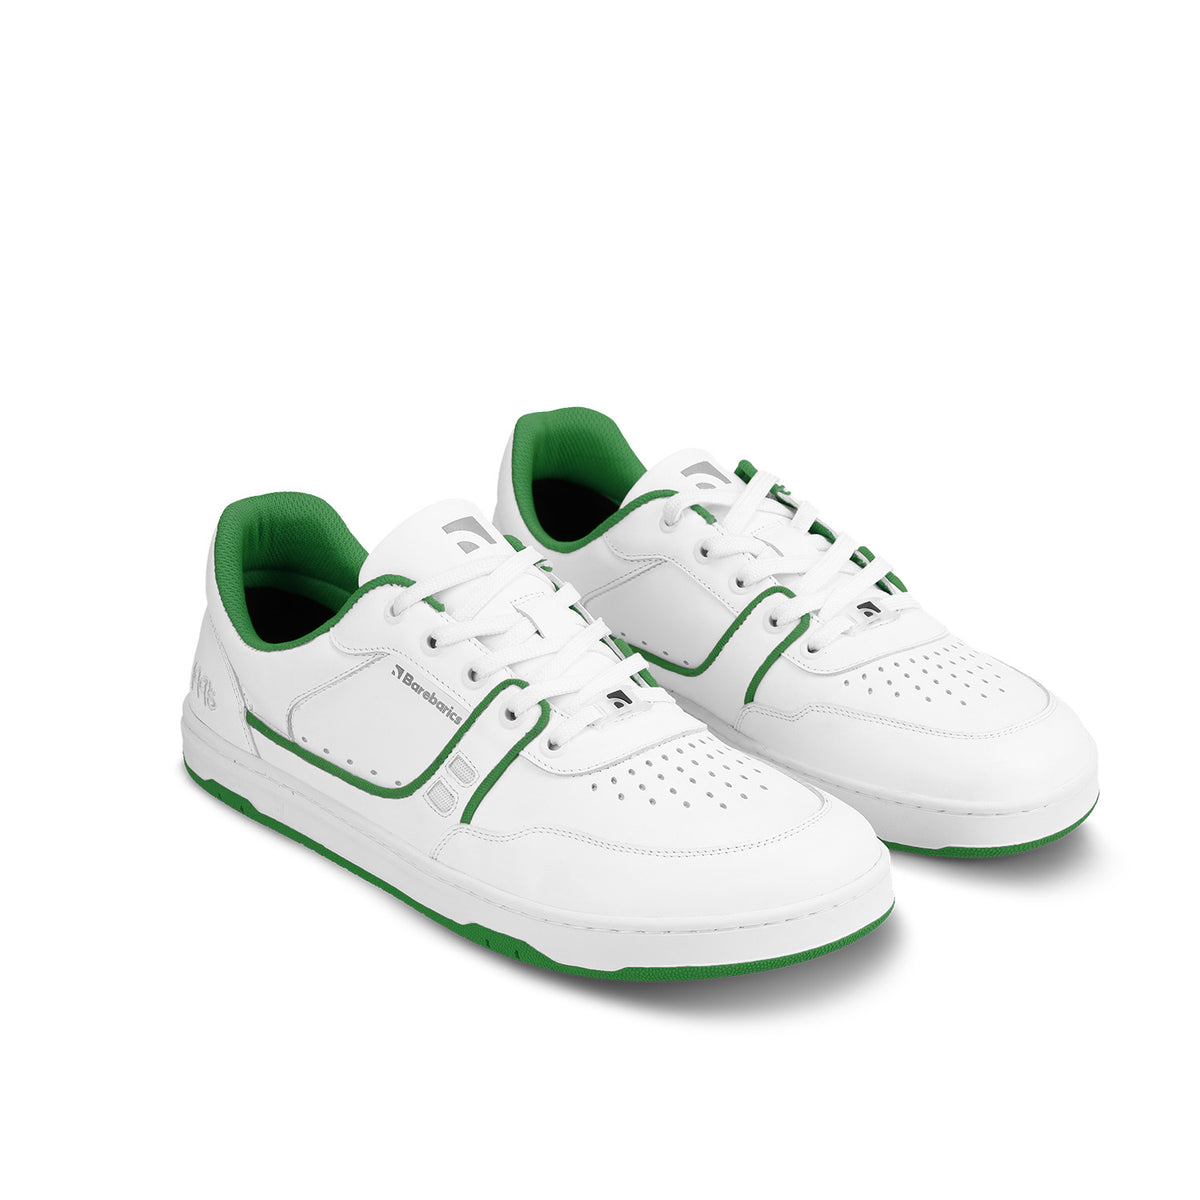 Barefoot Sneakers Barebarics Arise - White & Green 3  - OzBarefoot